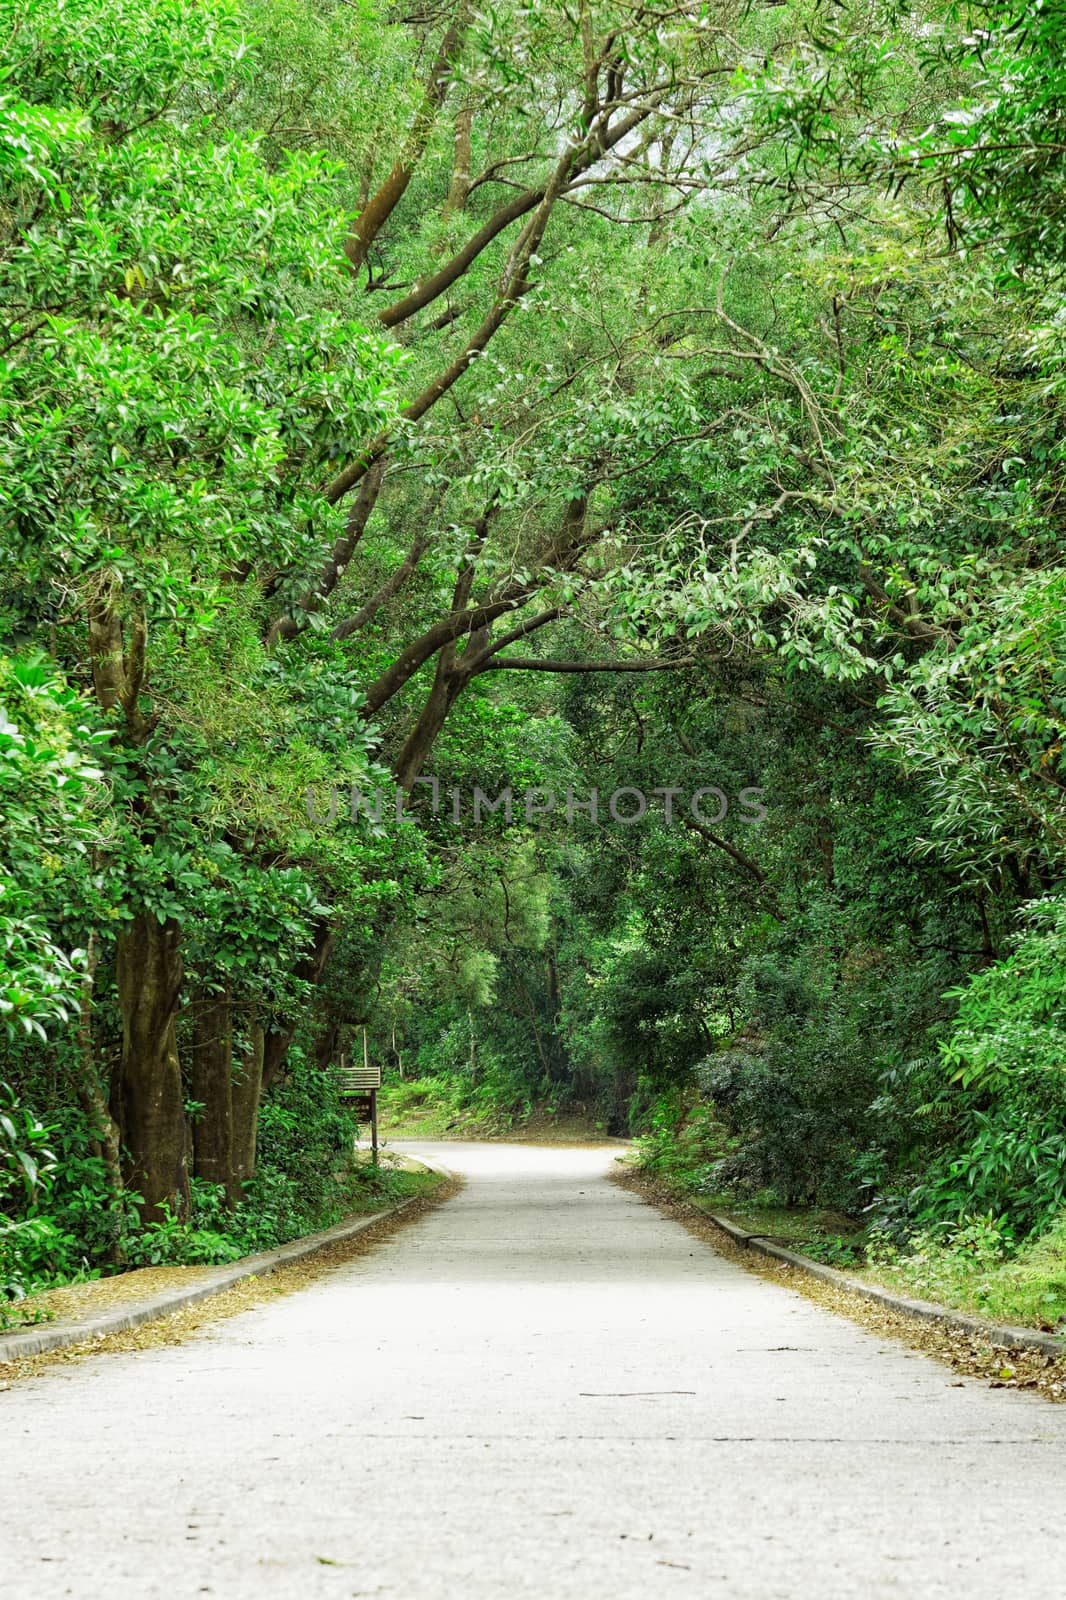 Asphalt road through the forest  by cozyta